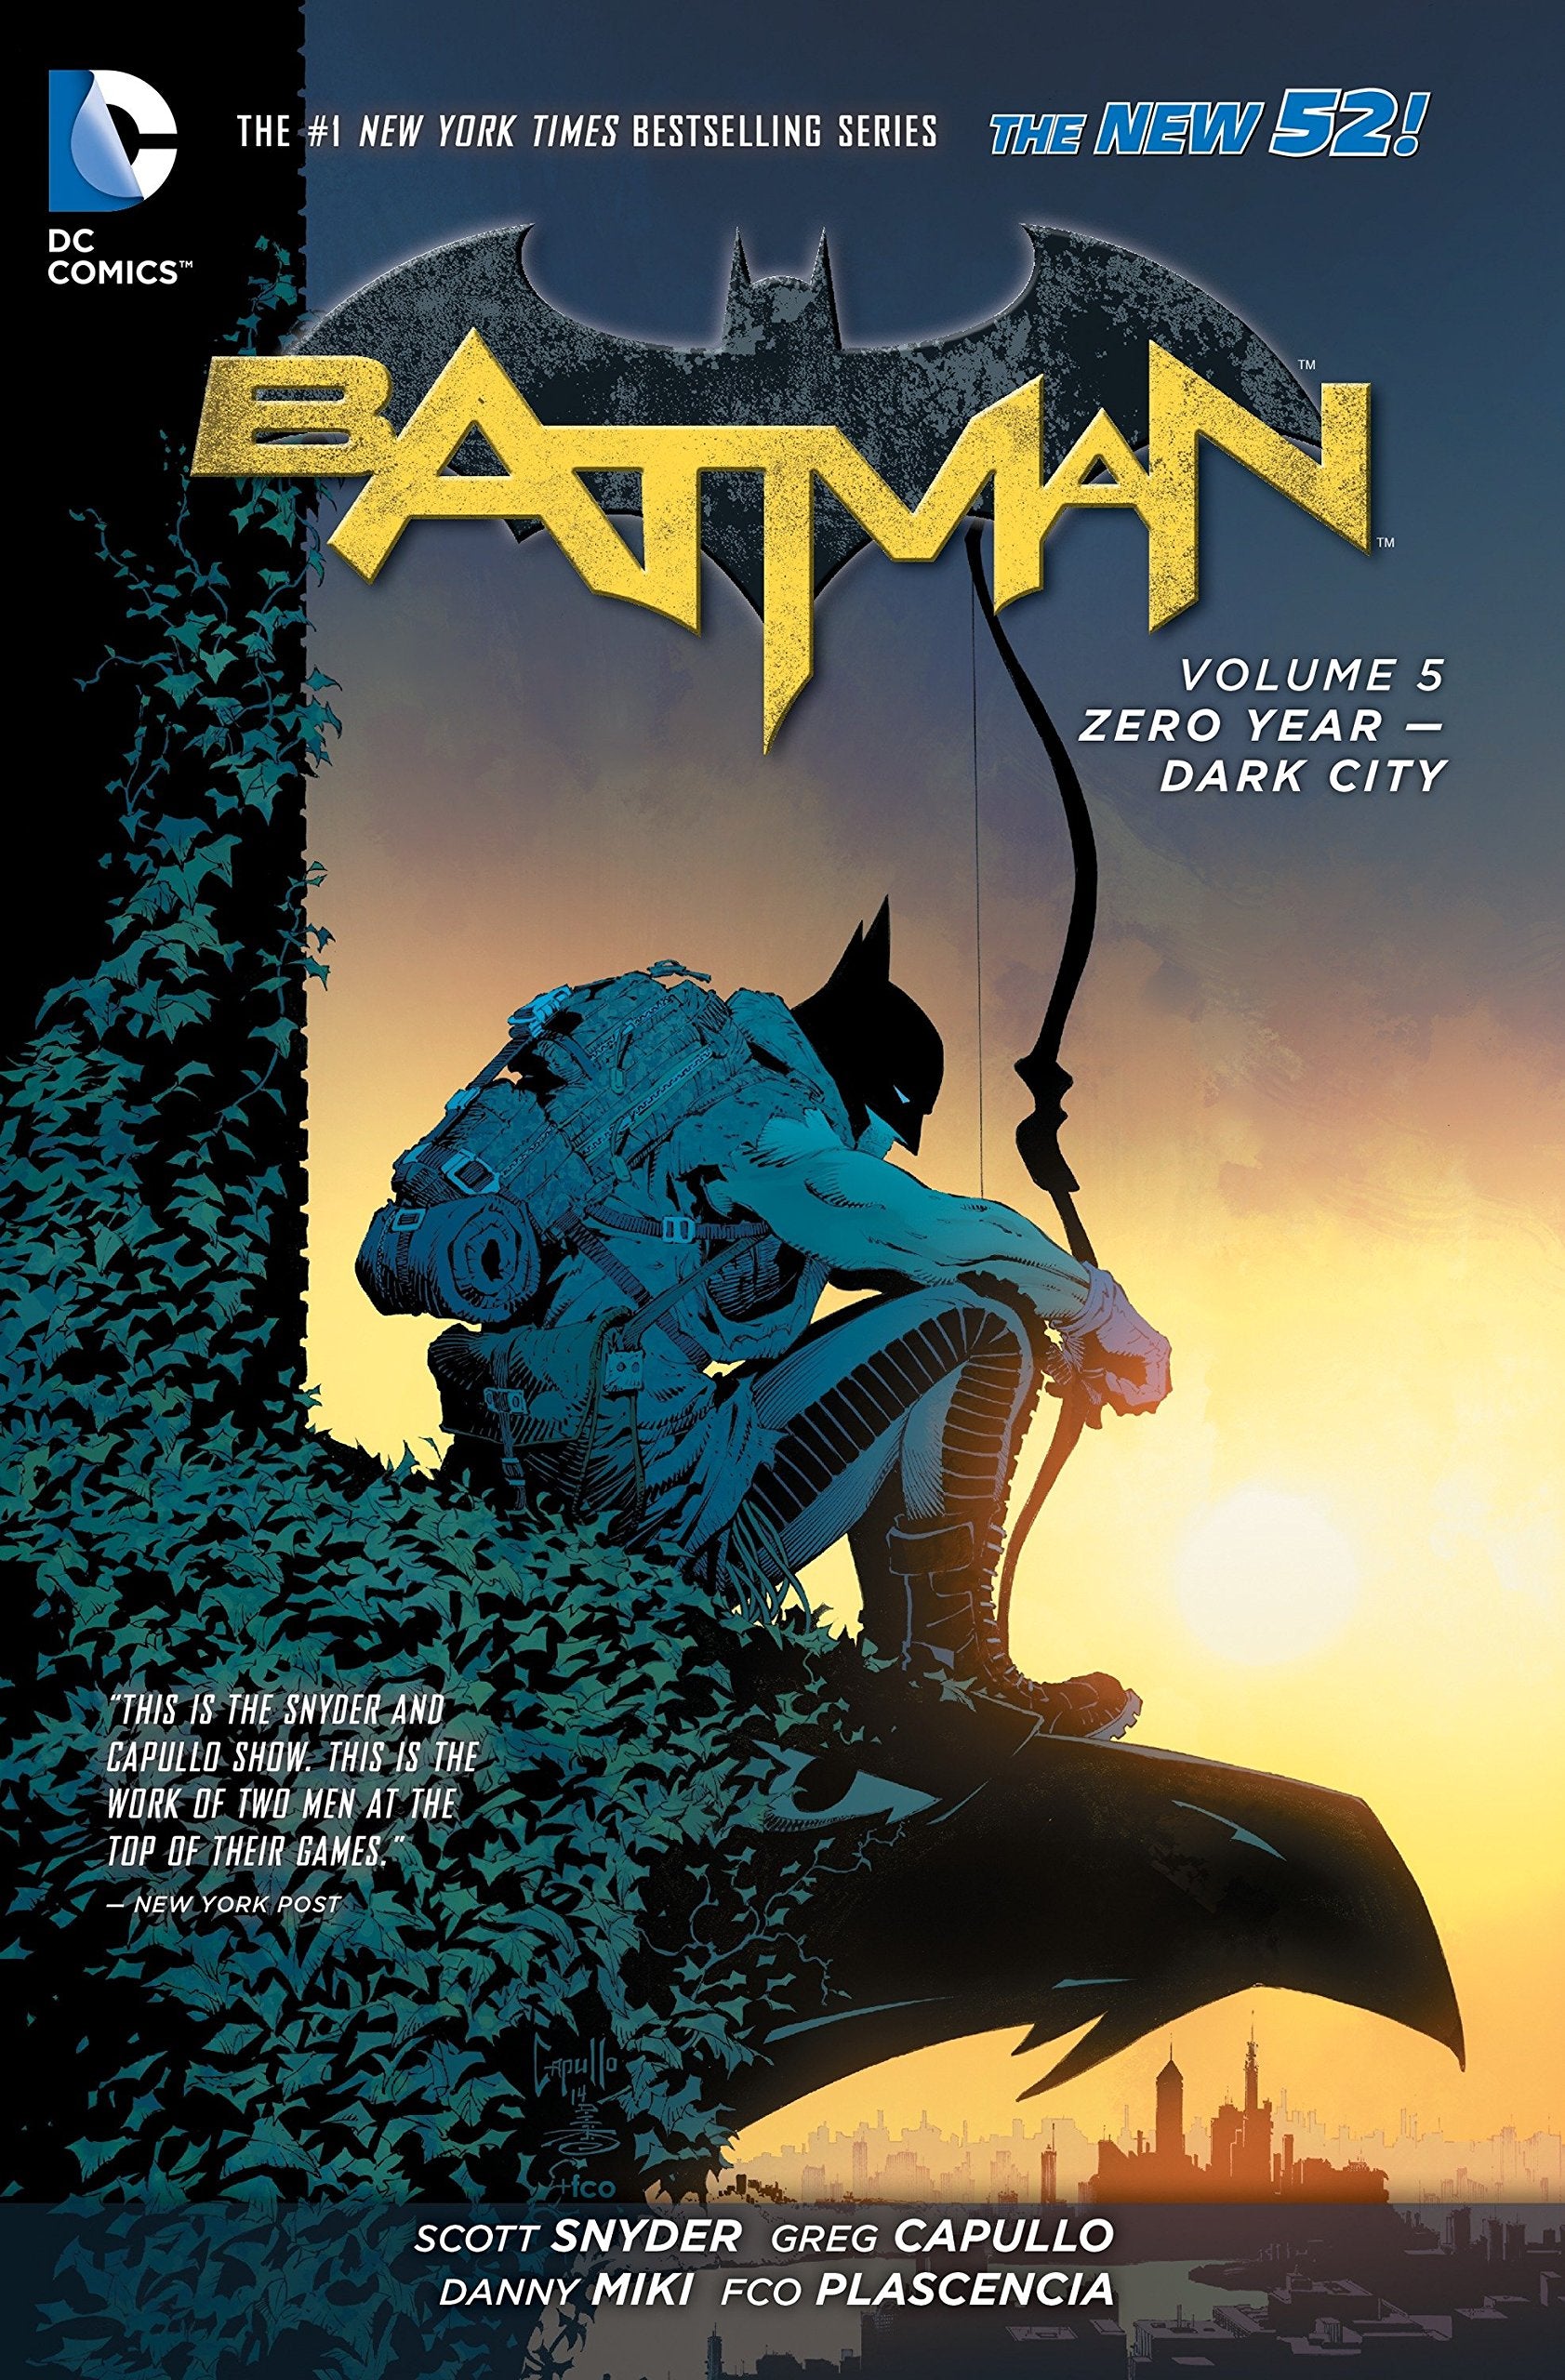 BATMAN (New 52) – Best Jackett Press